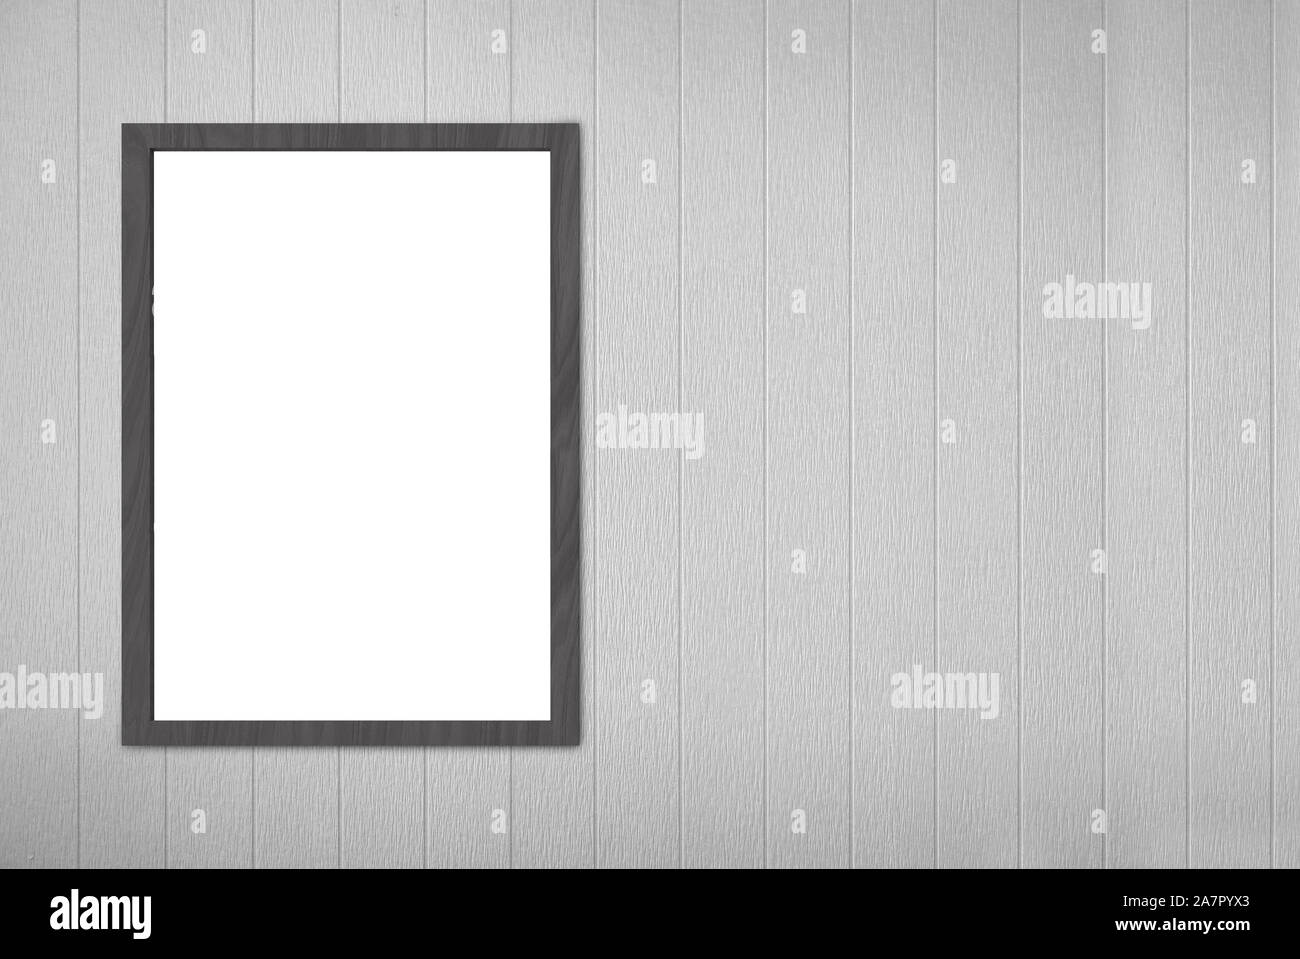 Leere leere weiße Mock up Bilderrahmen Board auf grau Holz Paneele Wand Hintergrund. Stockfoto